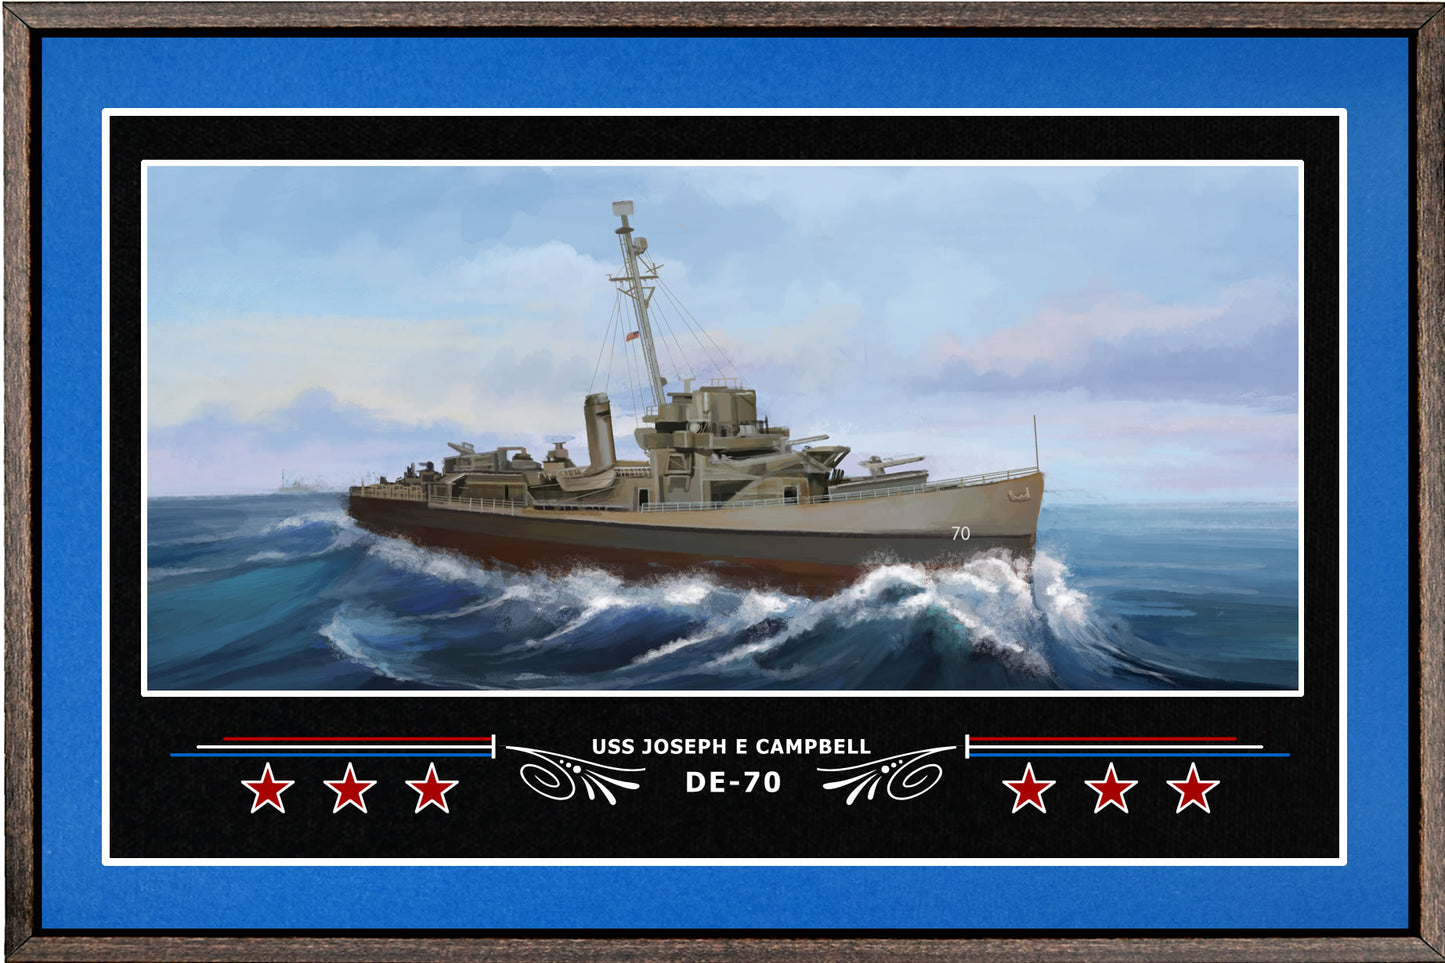 USS JOSEPH E CAMPBELL DE 70 BOX FRAMED CANVAS ART BLUE